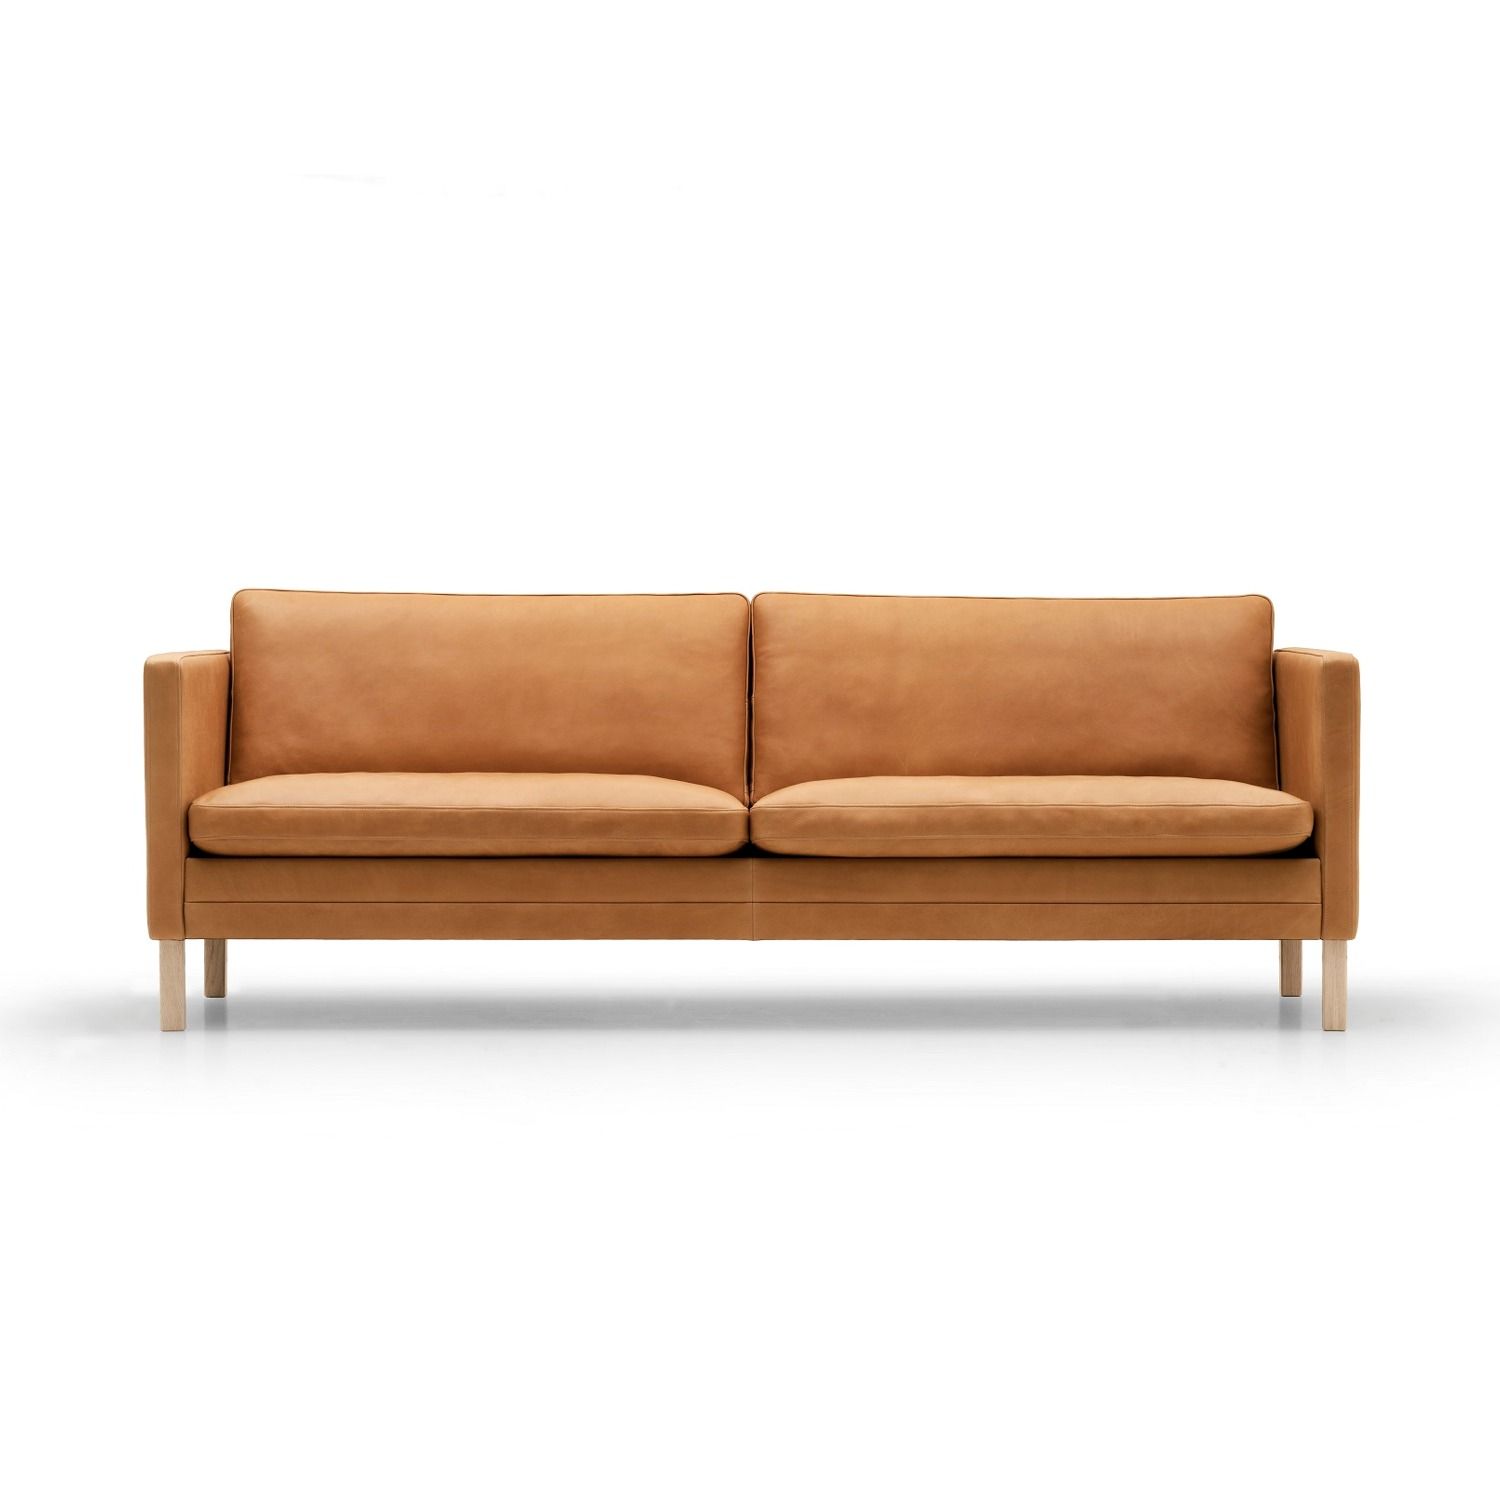 Vejfremstillingsproces supplere Vred MH 276 sofa - Køb online | Olsson Møbler